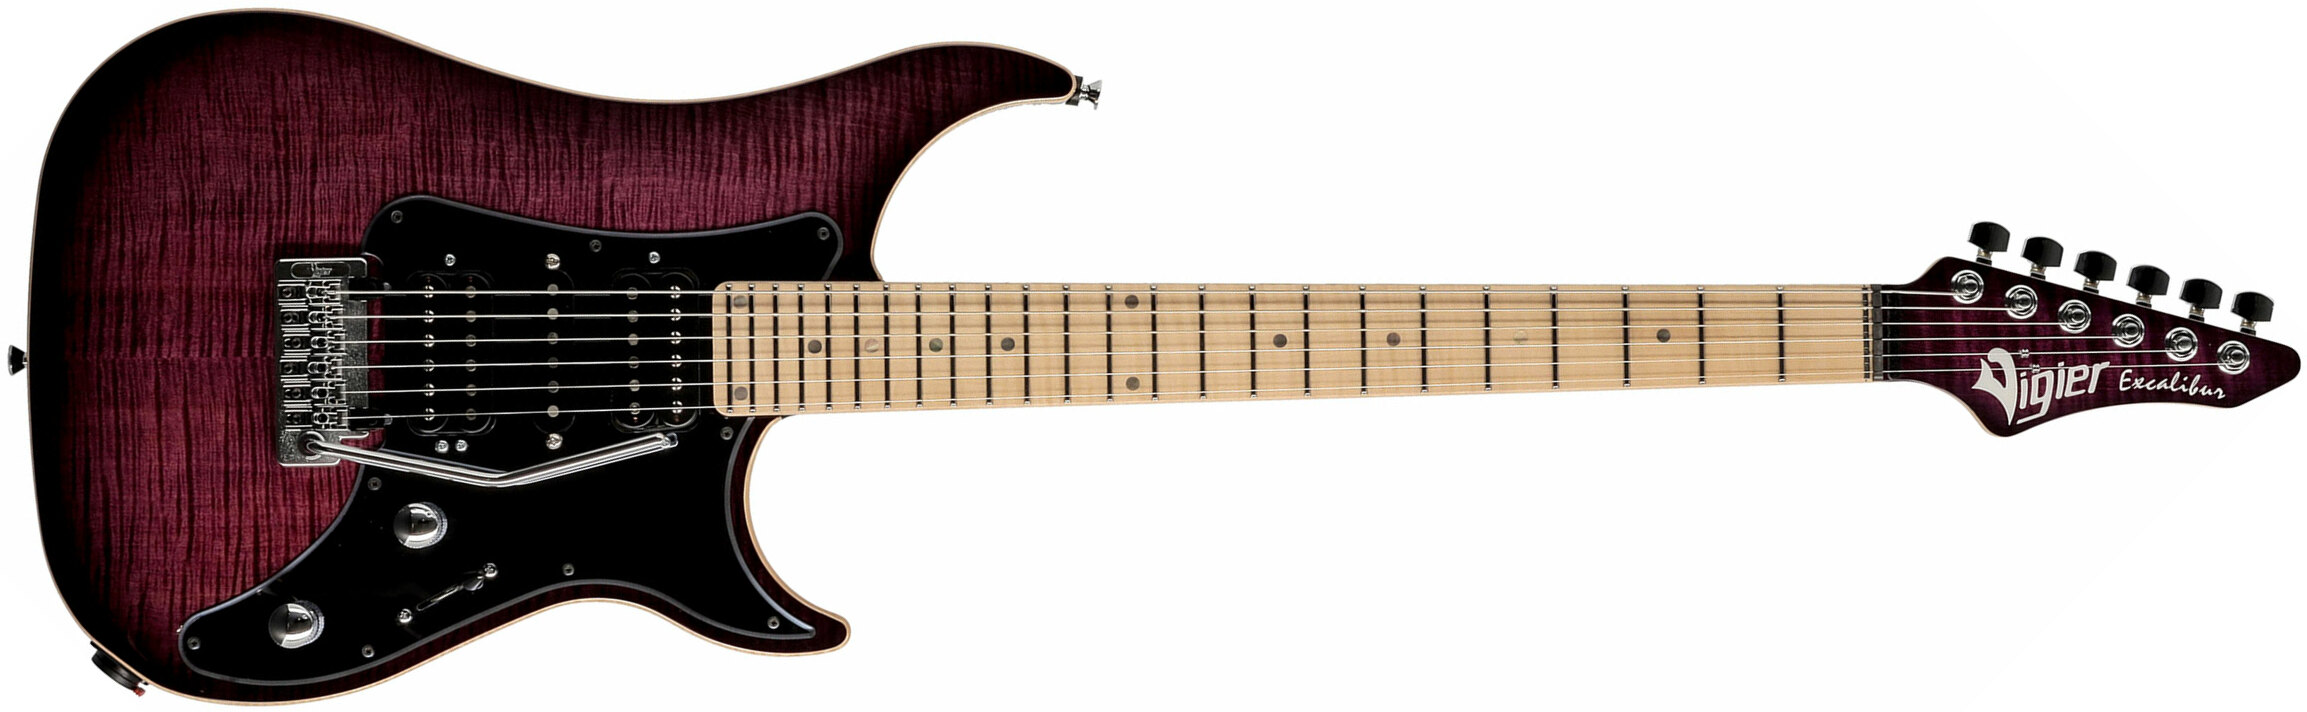 Vigier Excalibur Special Hsh Trem Mn - Mysterious Purple - Double Cut E-Gitarre - Main picture